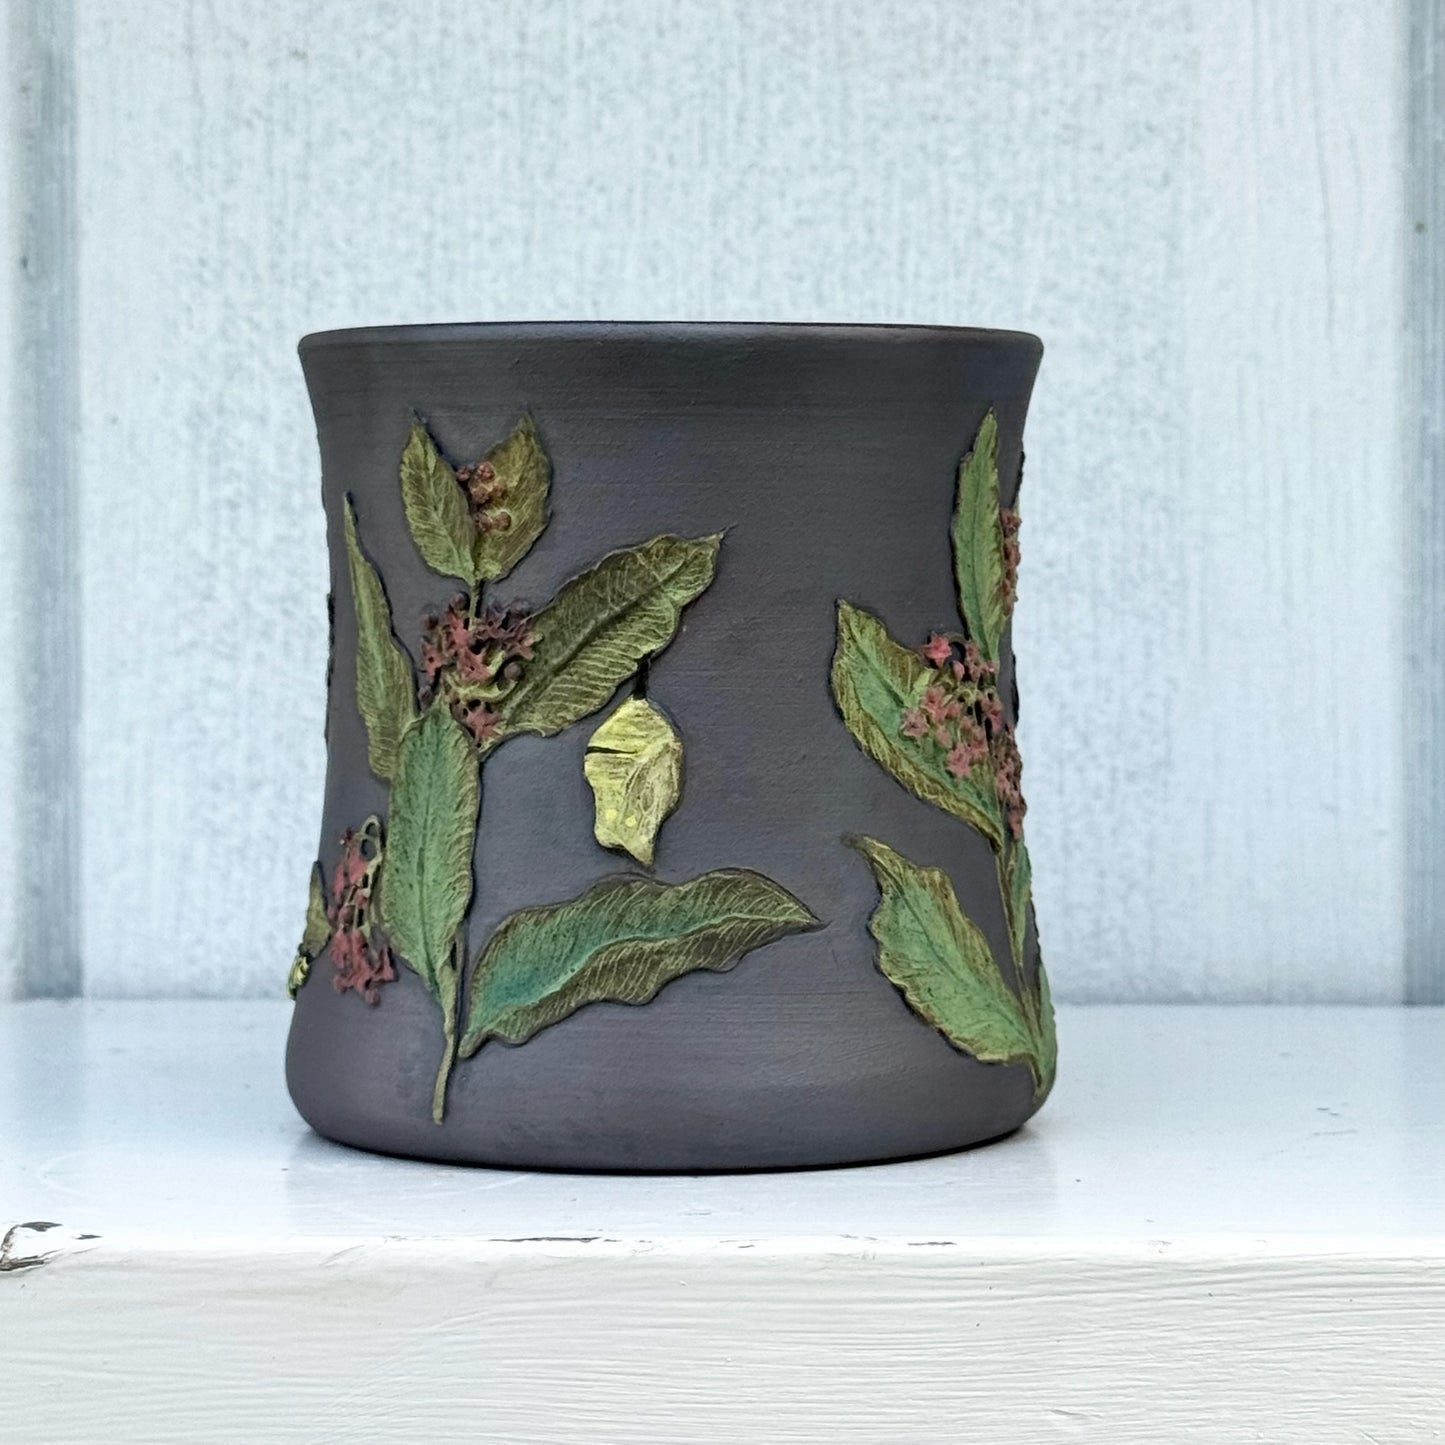 Monarch & Milkweed Botanical Mug #4050